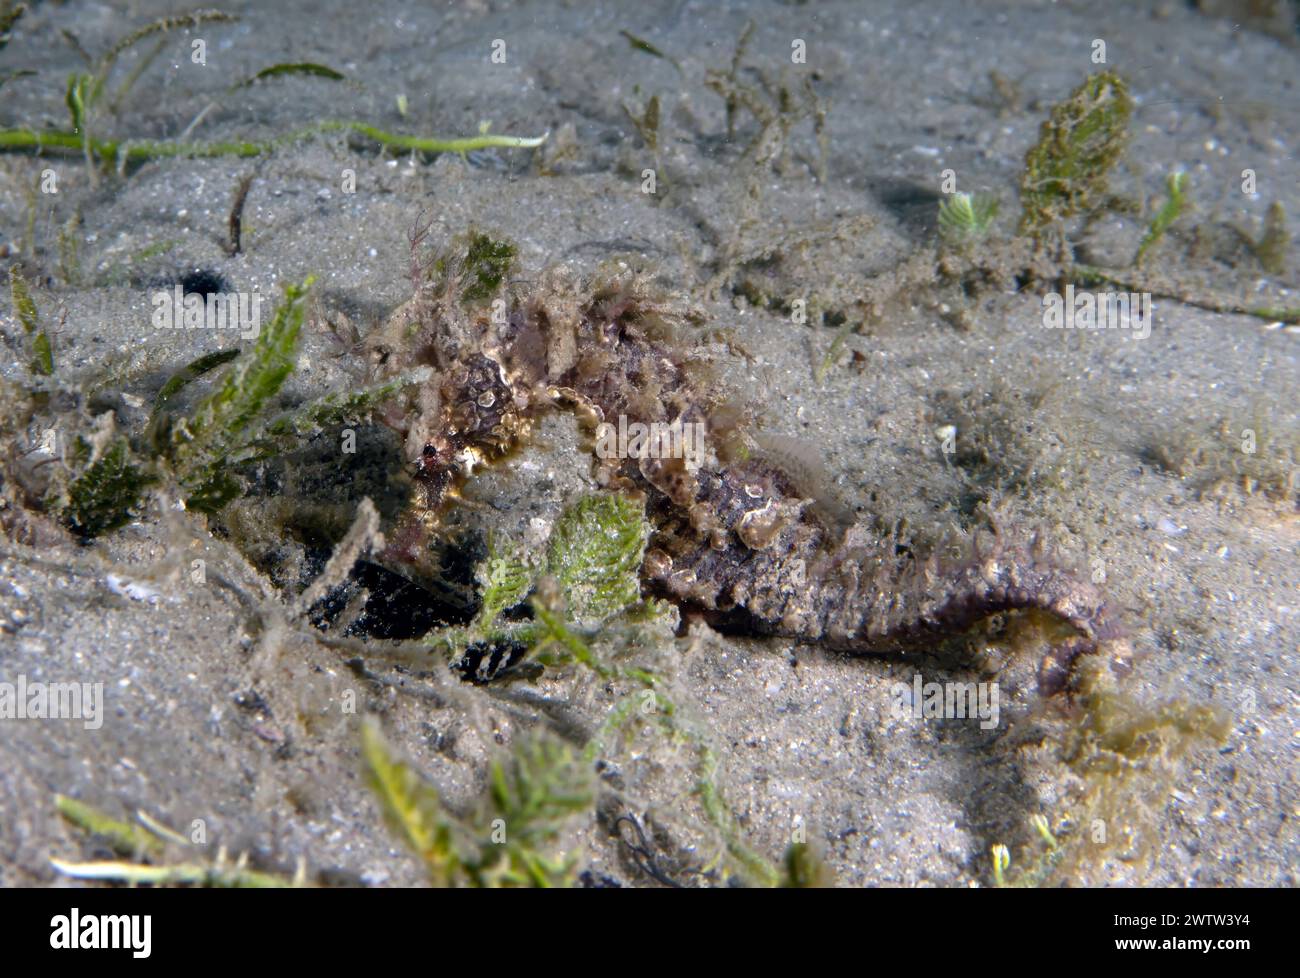 A Long-snouted Seahorse (Hippocampus guttulatus) in Florida, USA Stock Photo